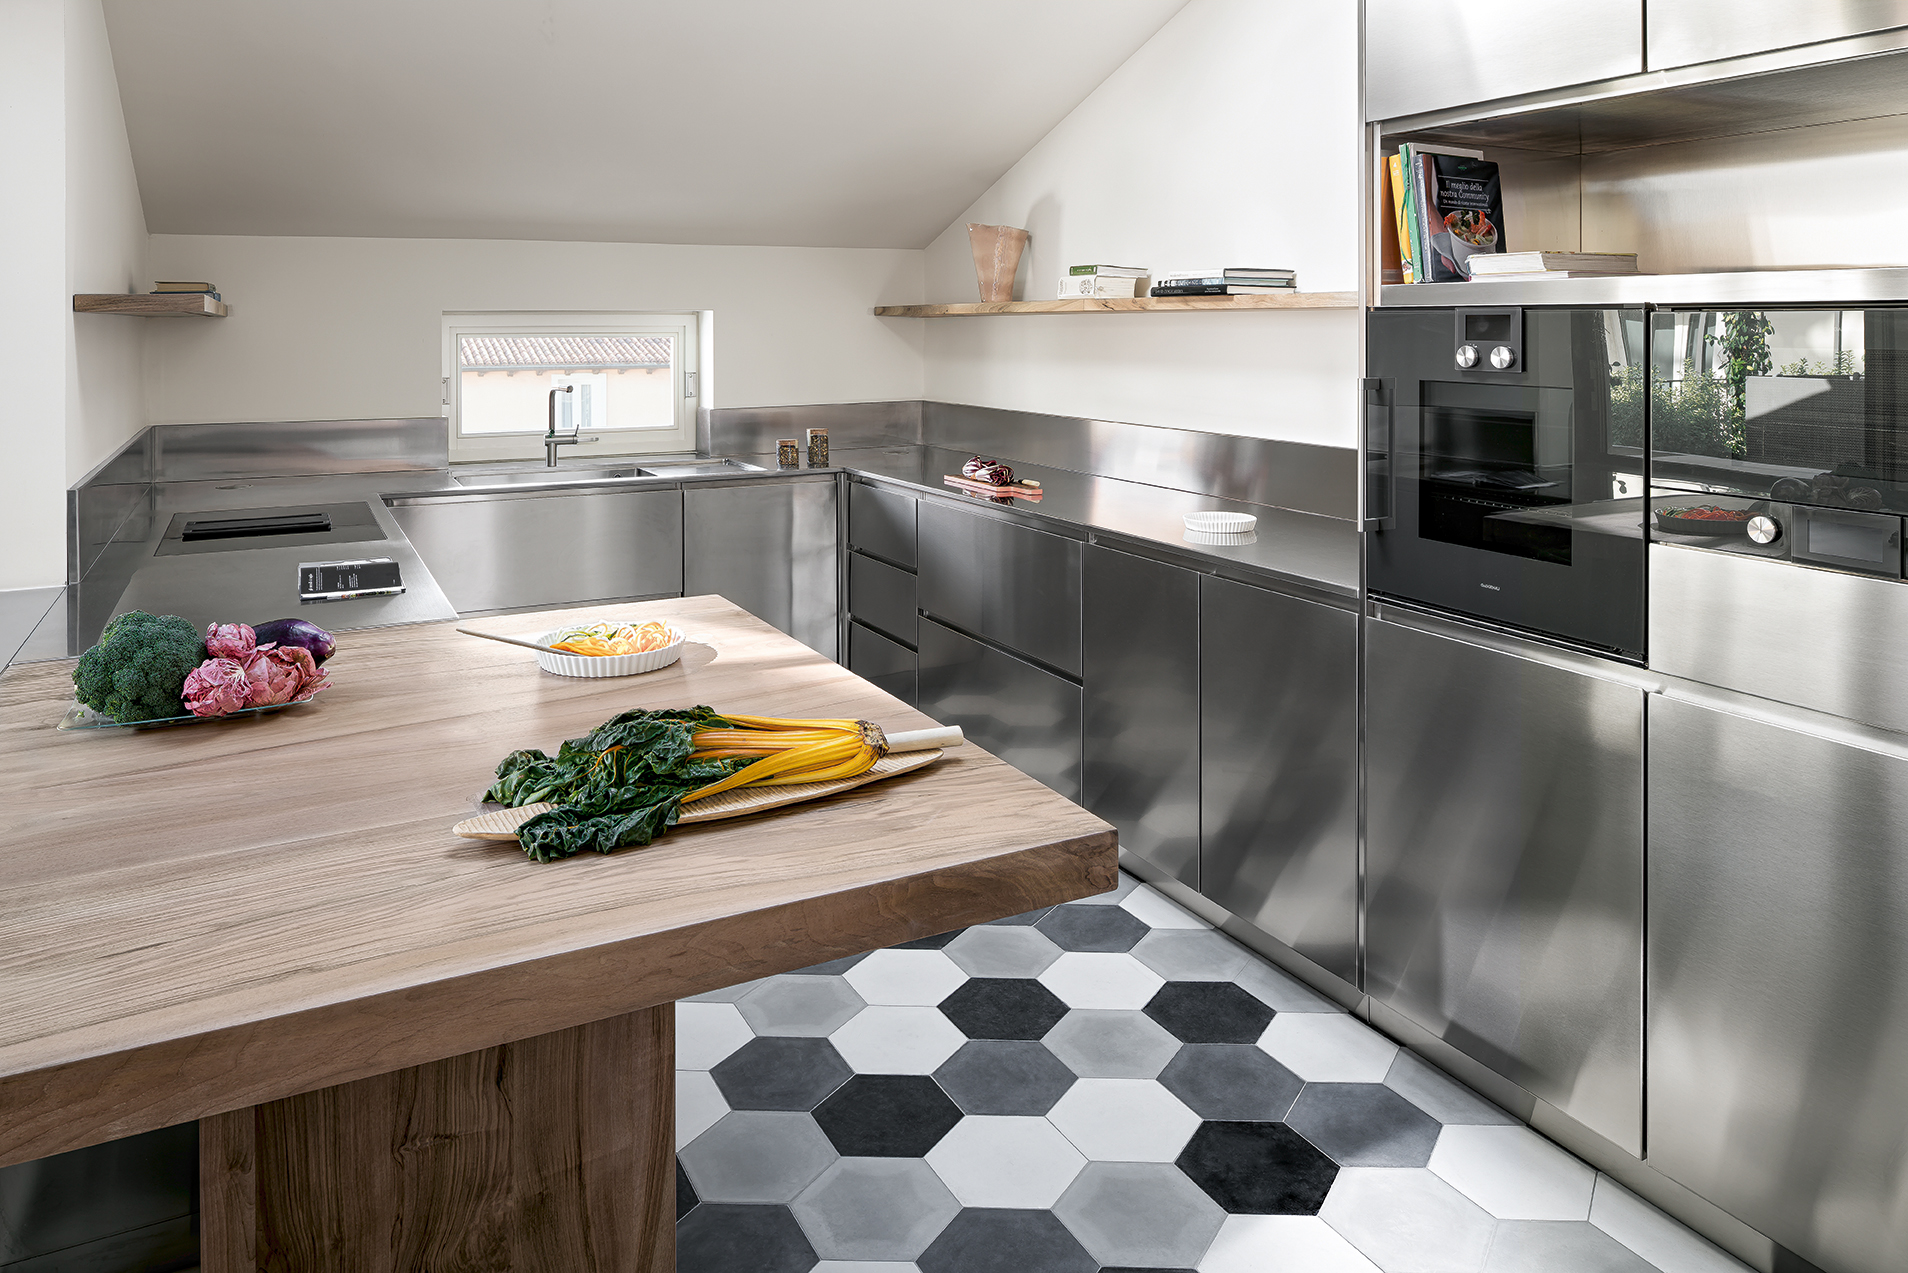 Fulham Bespoke Kitchen Design - Transitional - Kitchen - London - by Jones  Britain Kitchens - Houzz